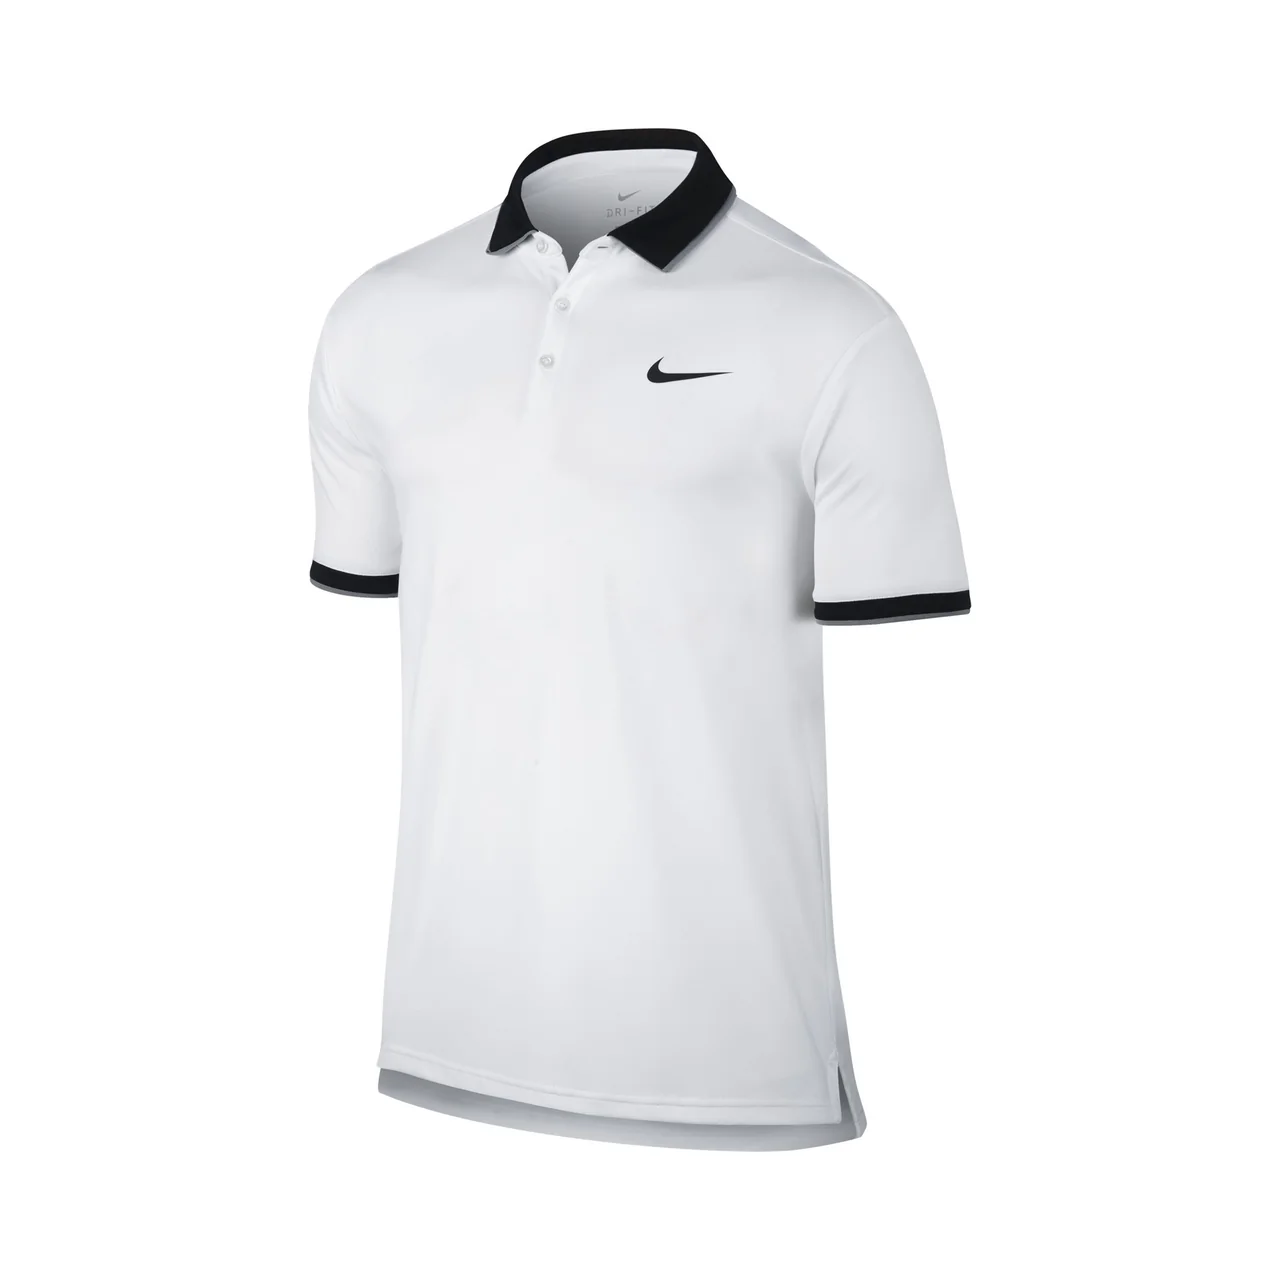 Nike Dry Team Polo White/Black Size S